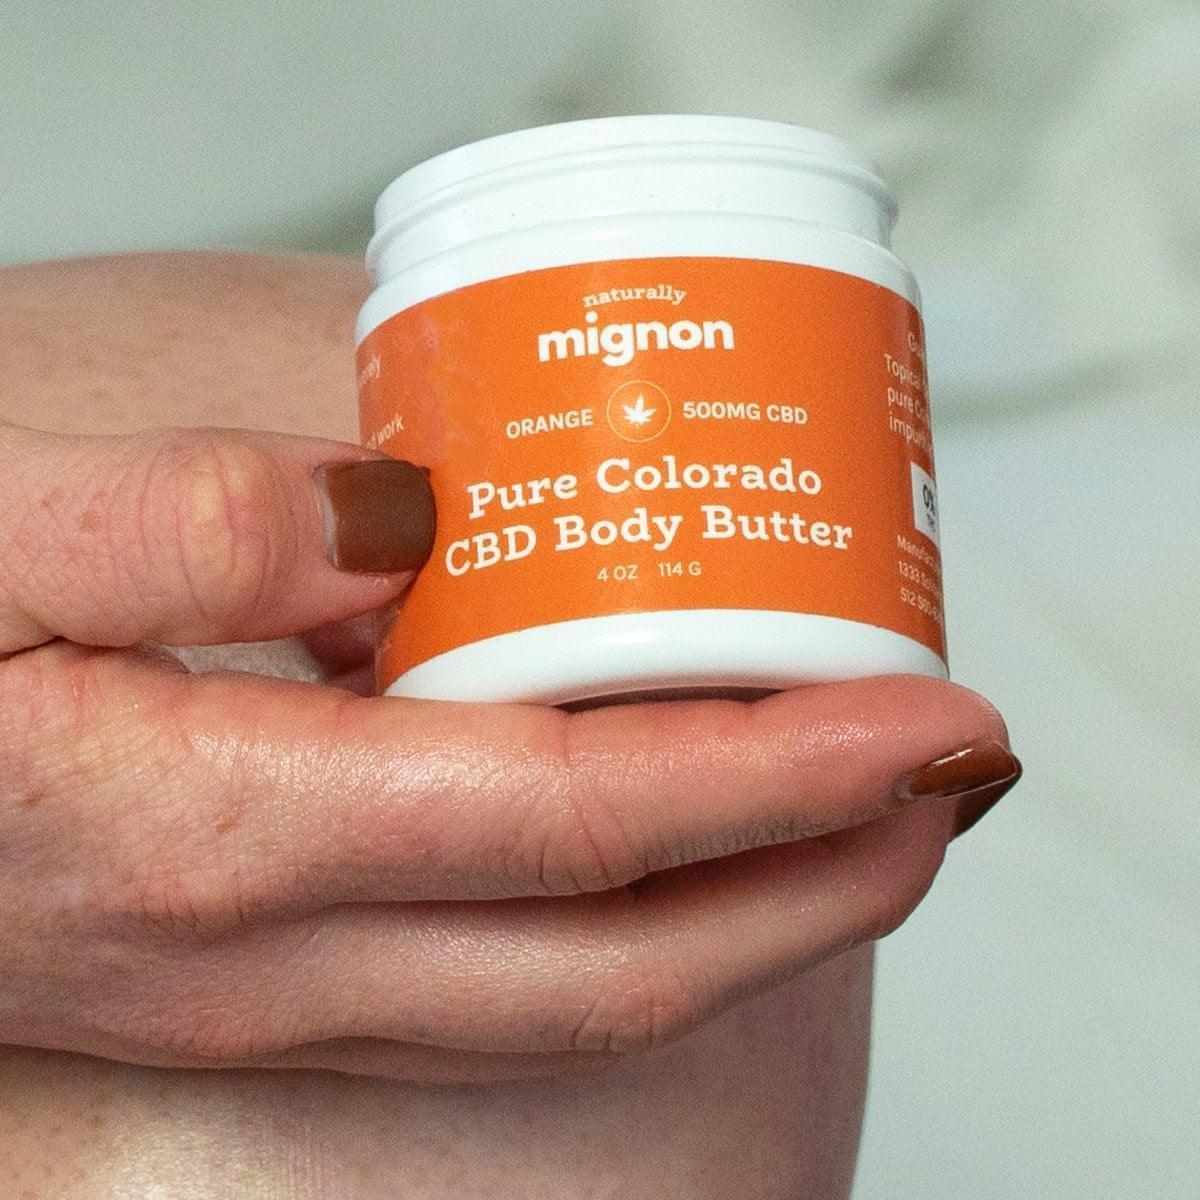 Pure Colorado CBD Body Butter with Orange Oil